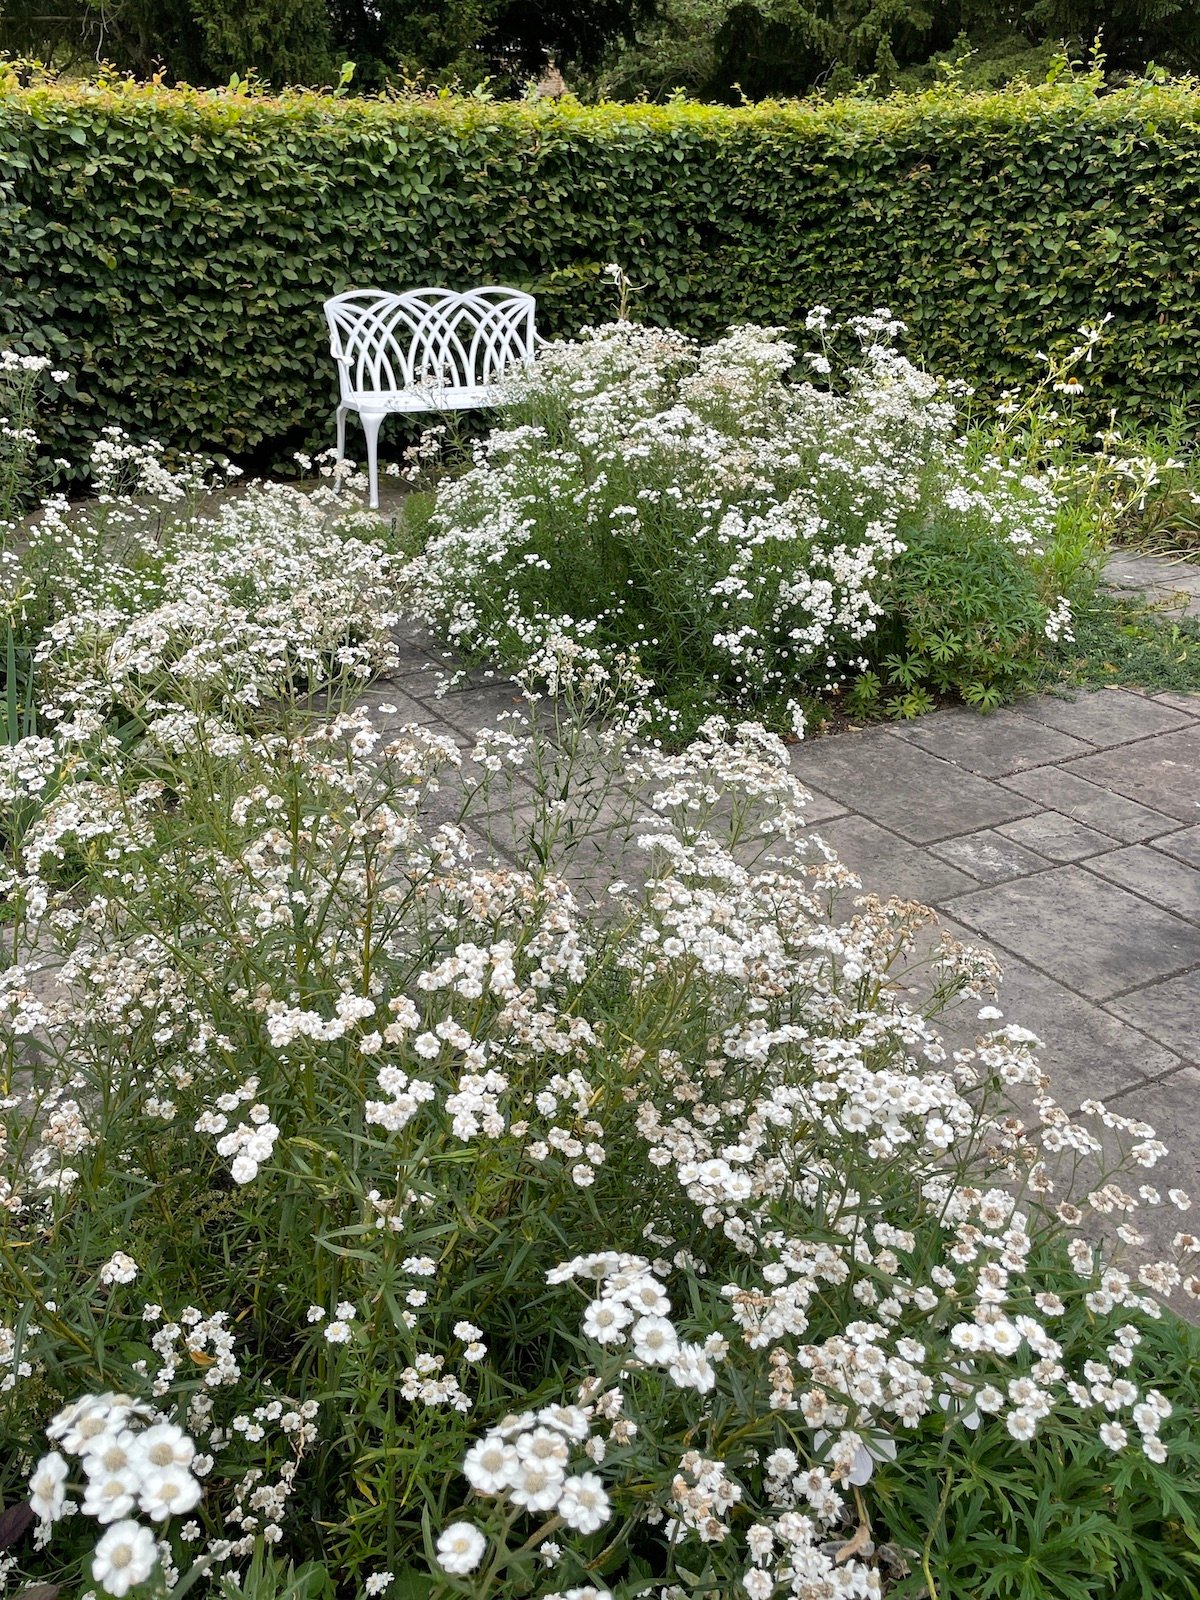 How do you choose a new garden bench?